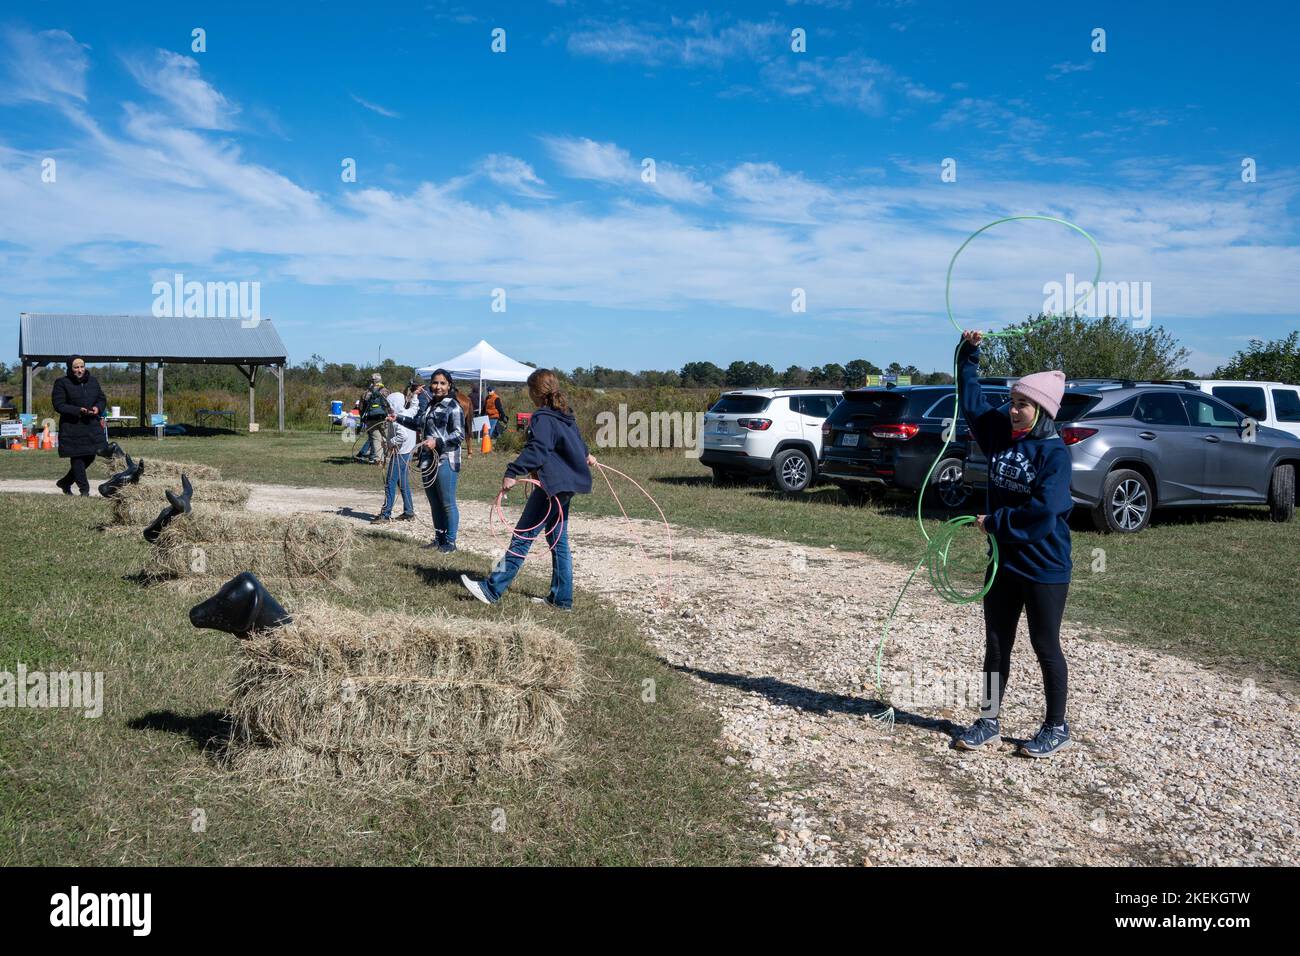 Ragazze giovani che praticano il lancio della corda in un parco locale. Houston, Texas, Stati Uniti. Foto Stock